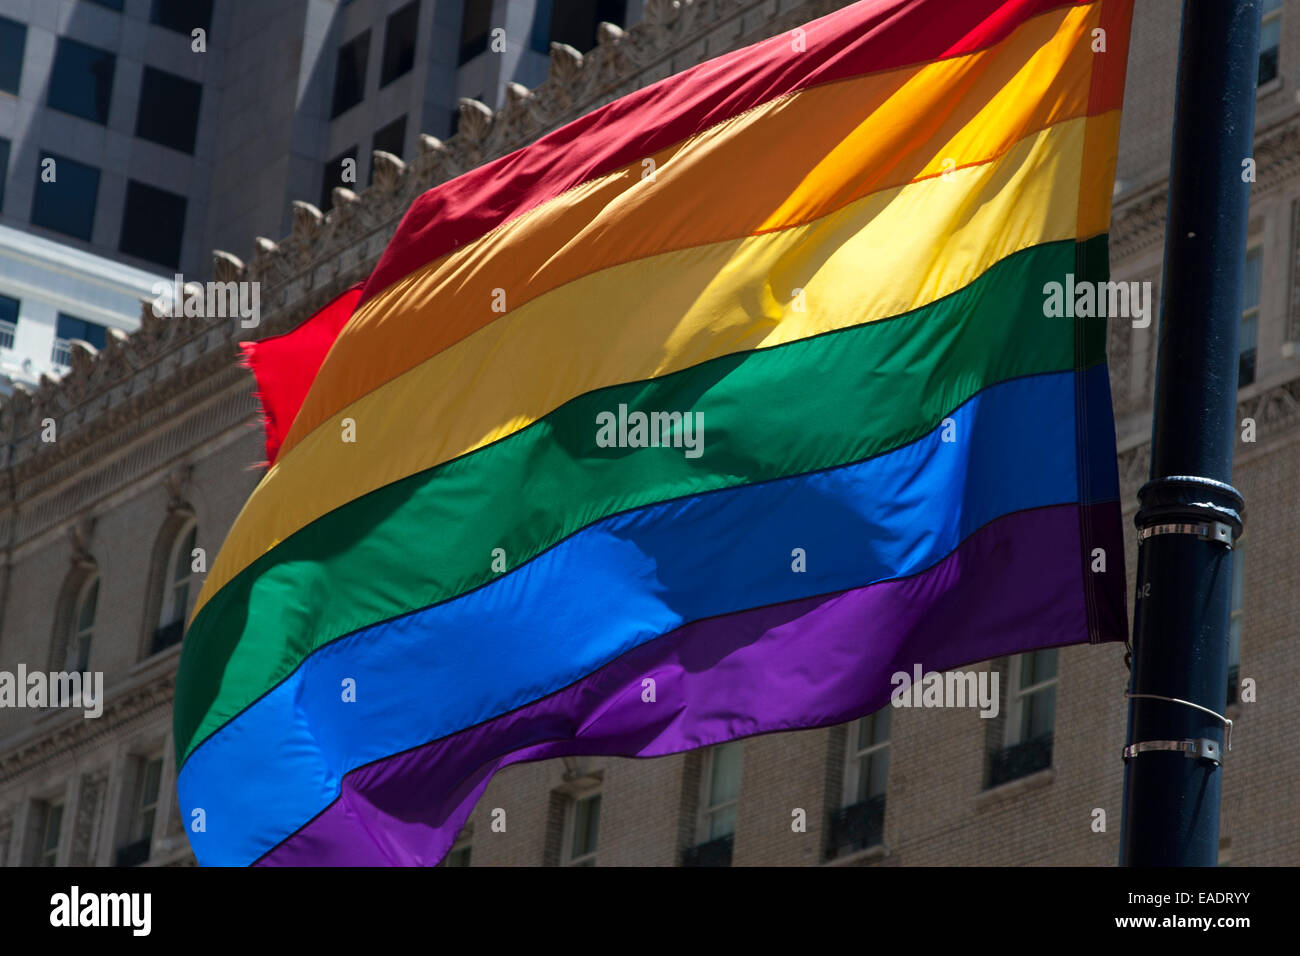 Drapeau arc-en-ciel à la Pride Parade, dans le centre-ville de San Francisco sur Market Street. Banque D'Images